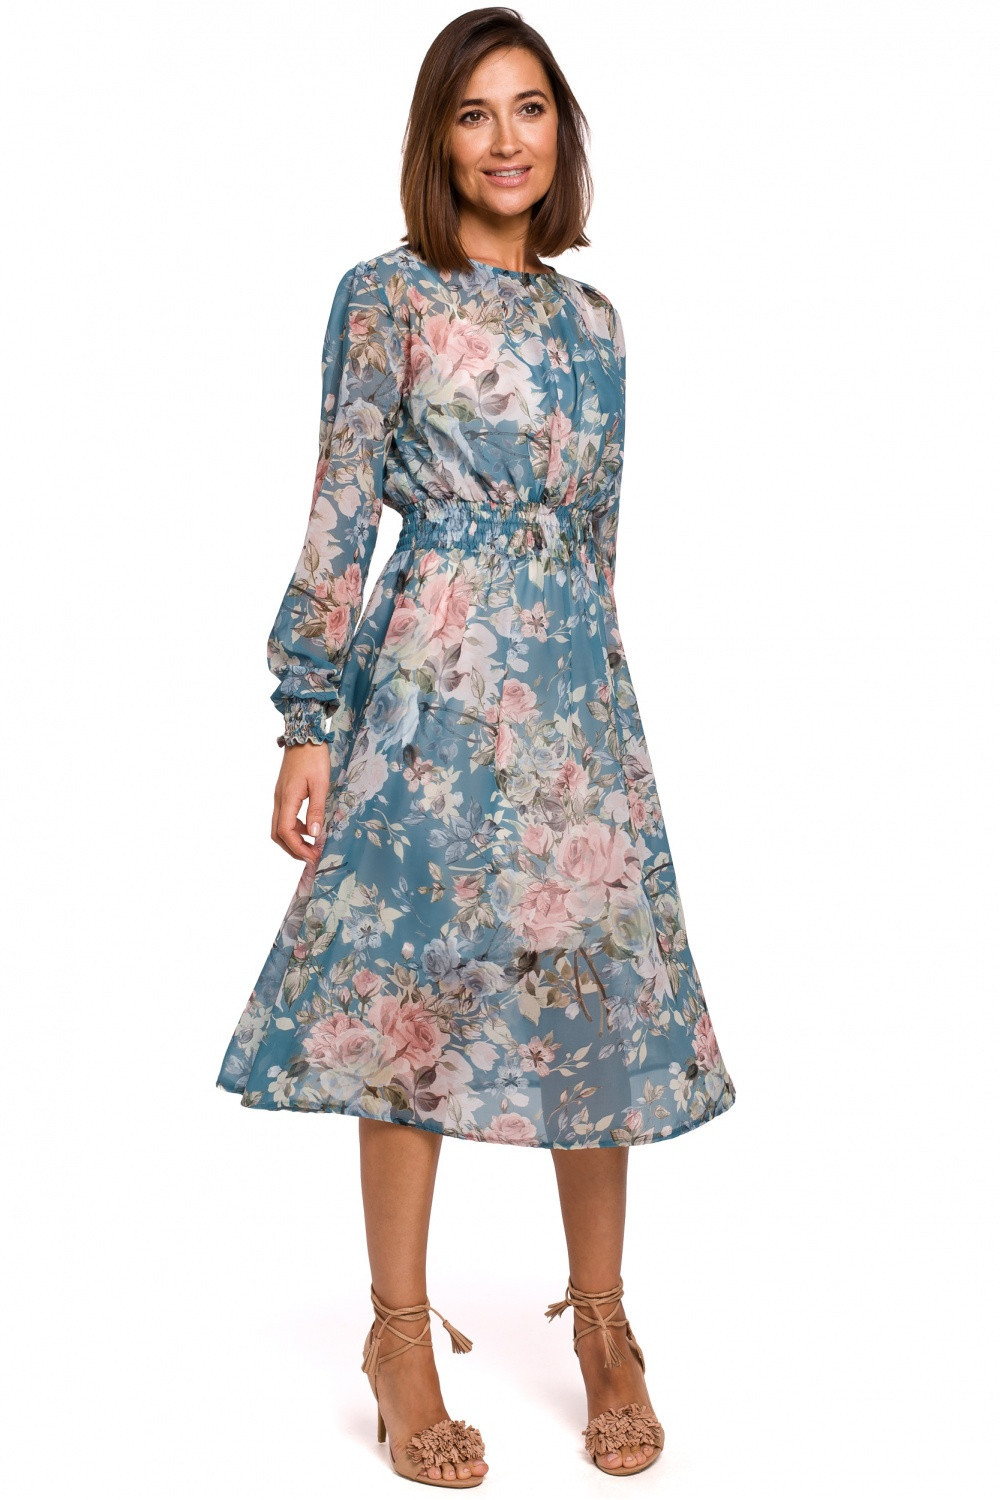 Dámské šaty S213 - Stylove M-38 modrá - květy